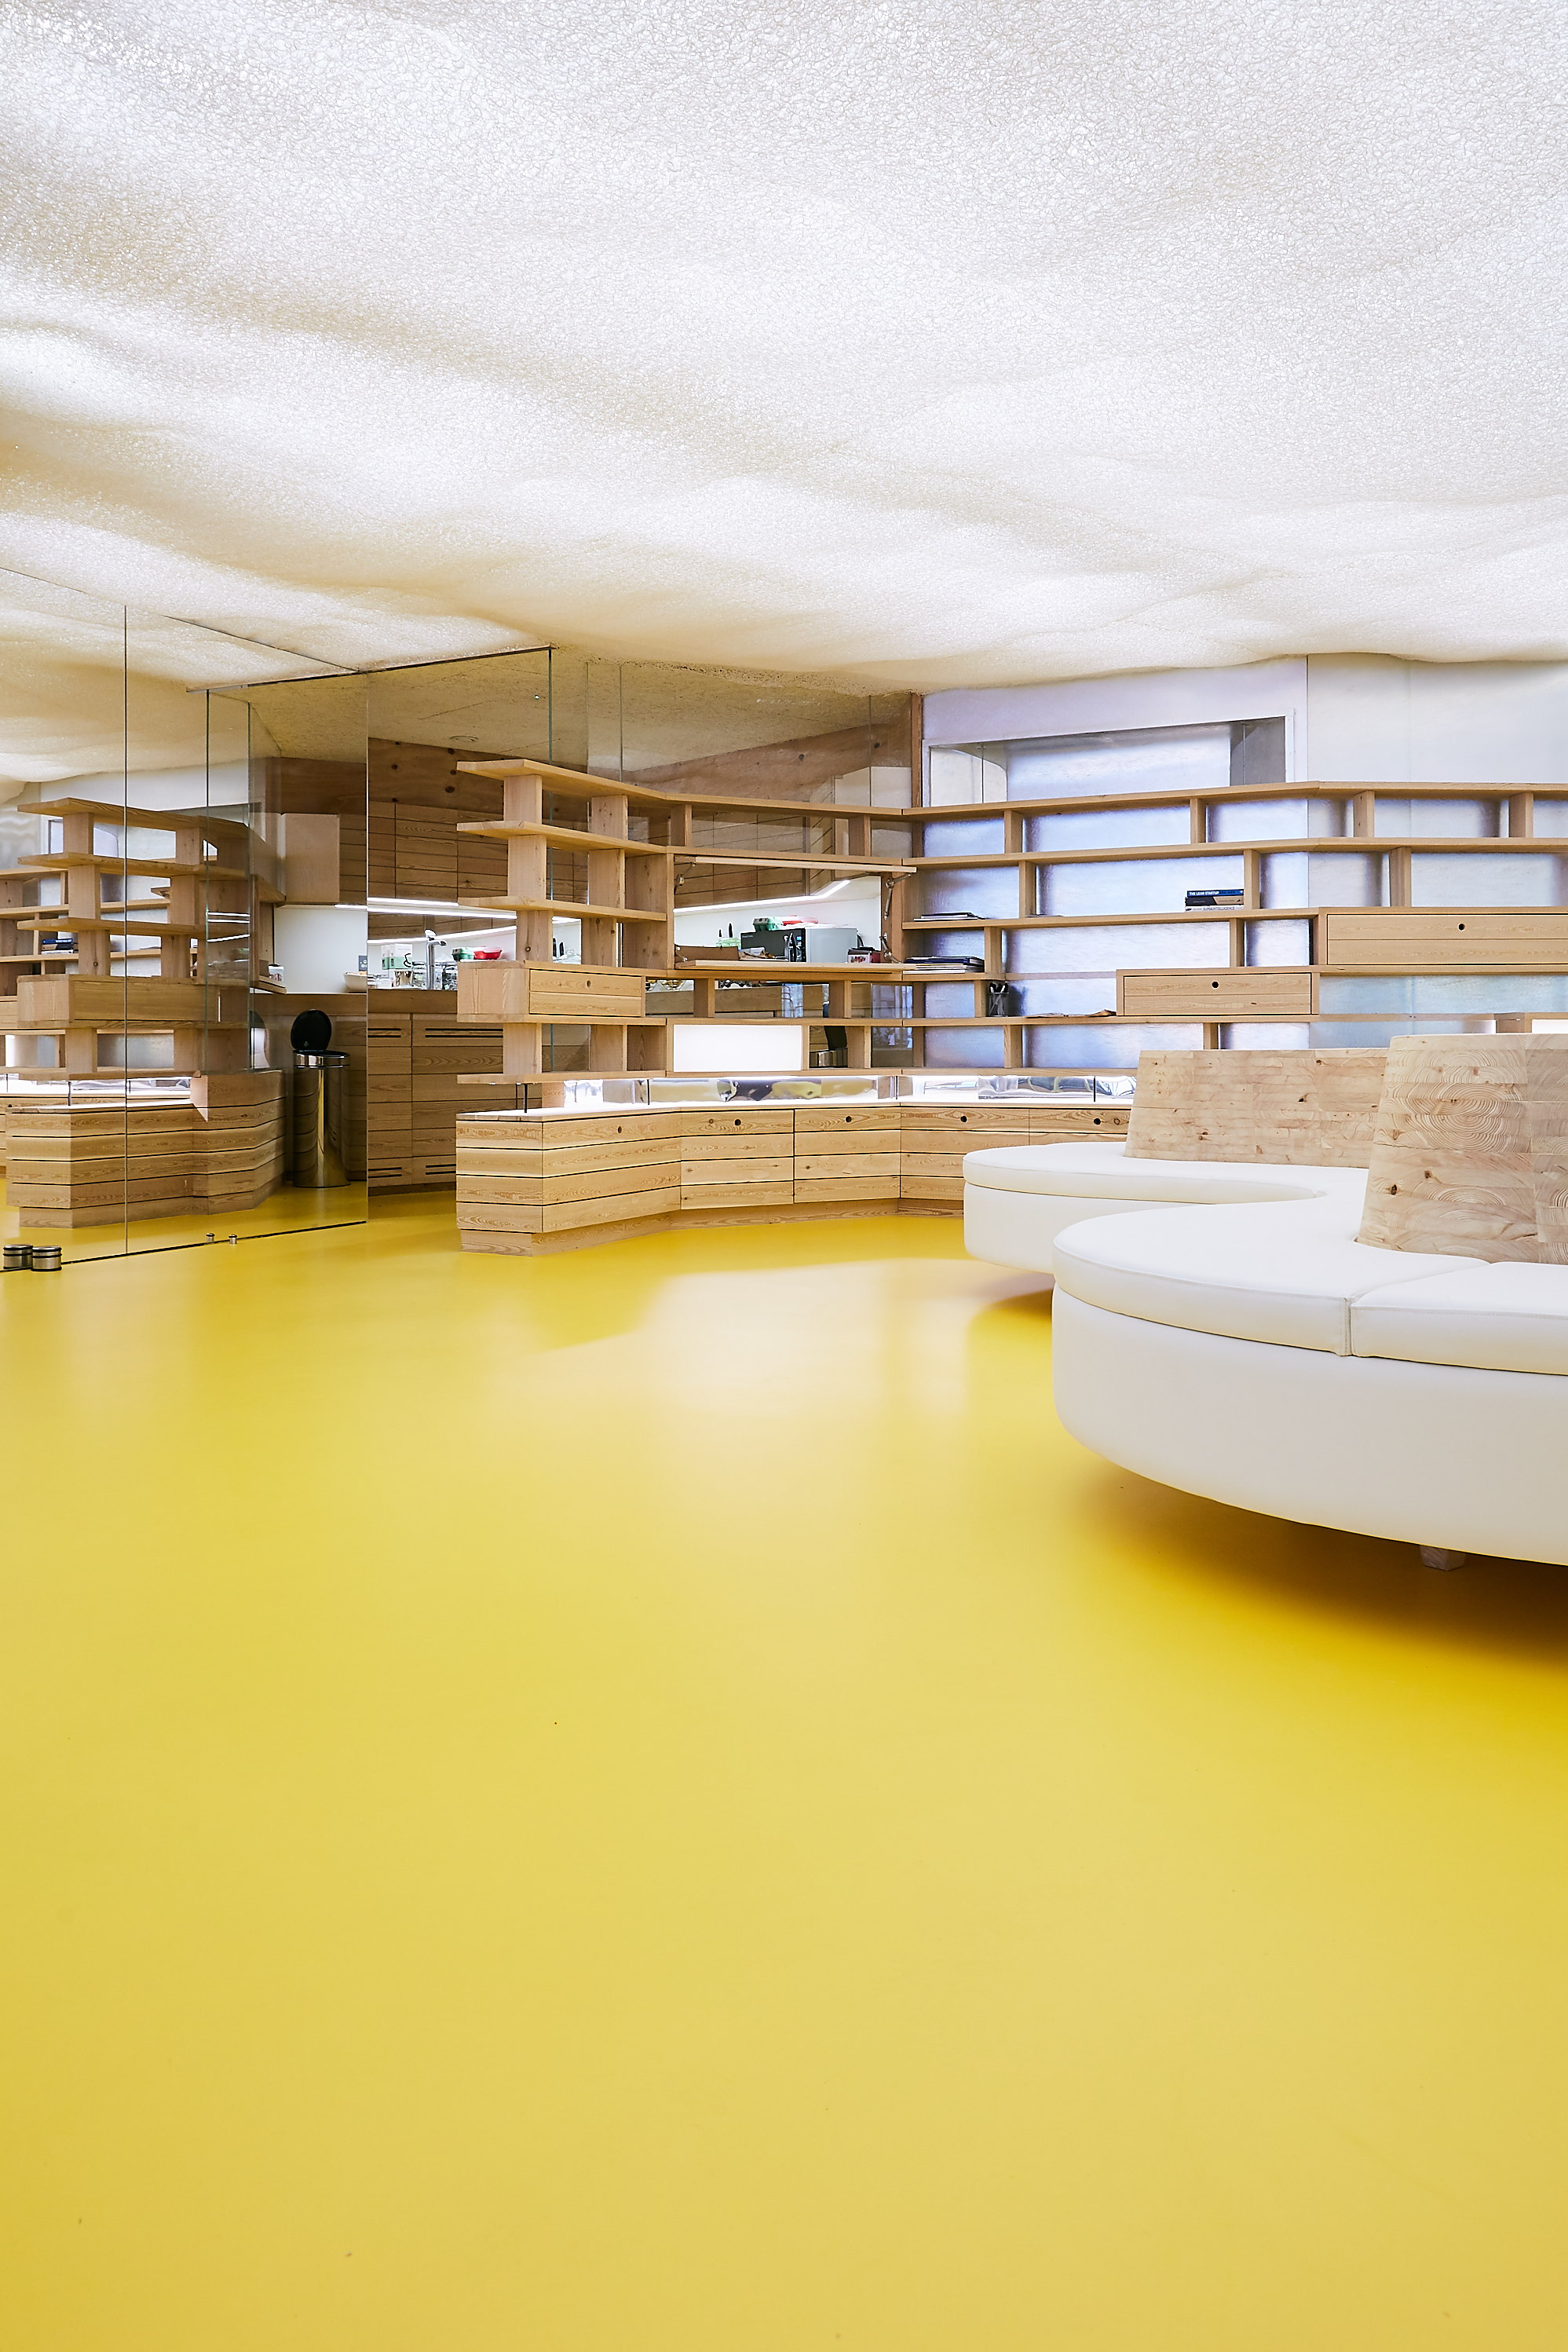 A ForumSphere resin floor in yellow